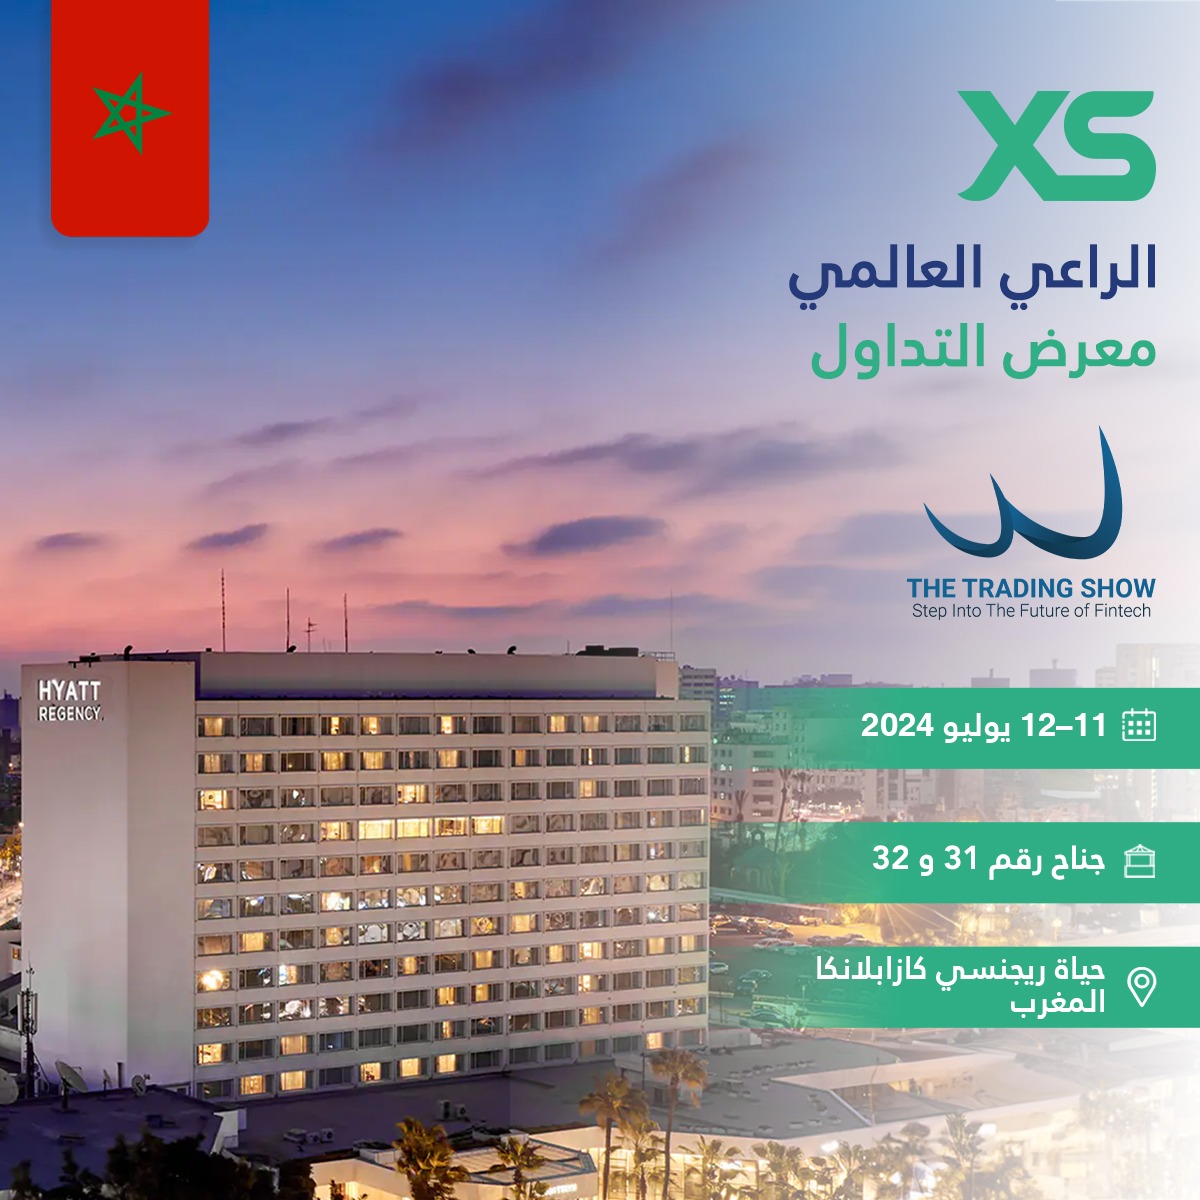 إكس أس XS.com تتصدر معرض التداول في الدار البيضاء بصفتها الراعي العالمي